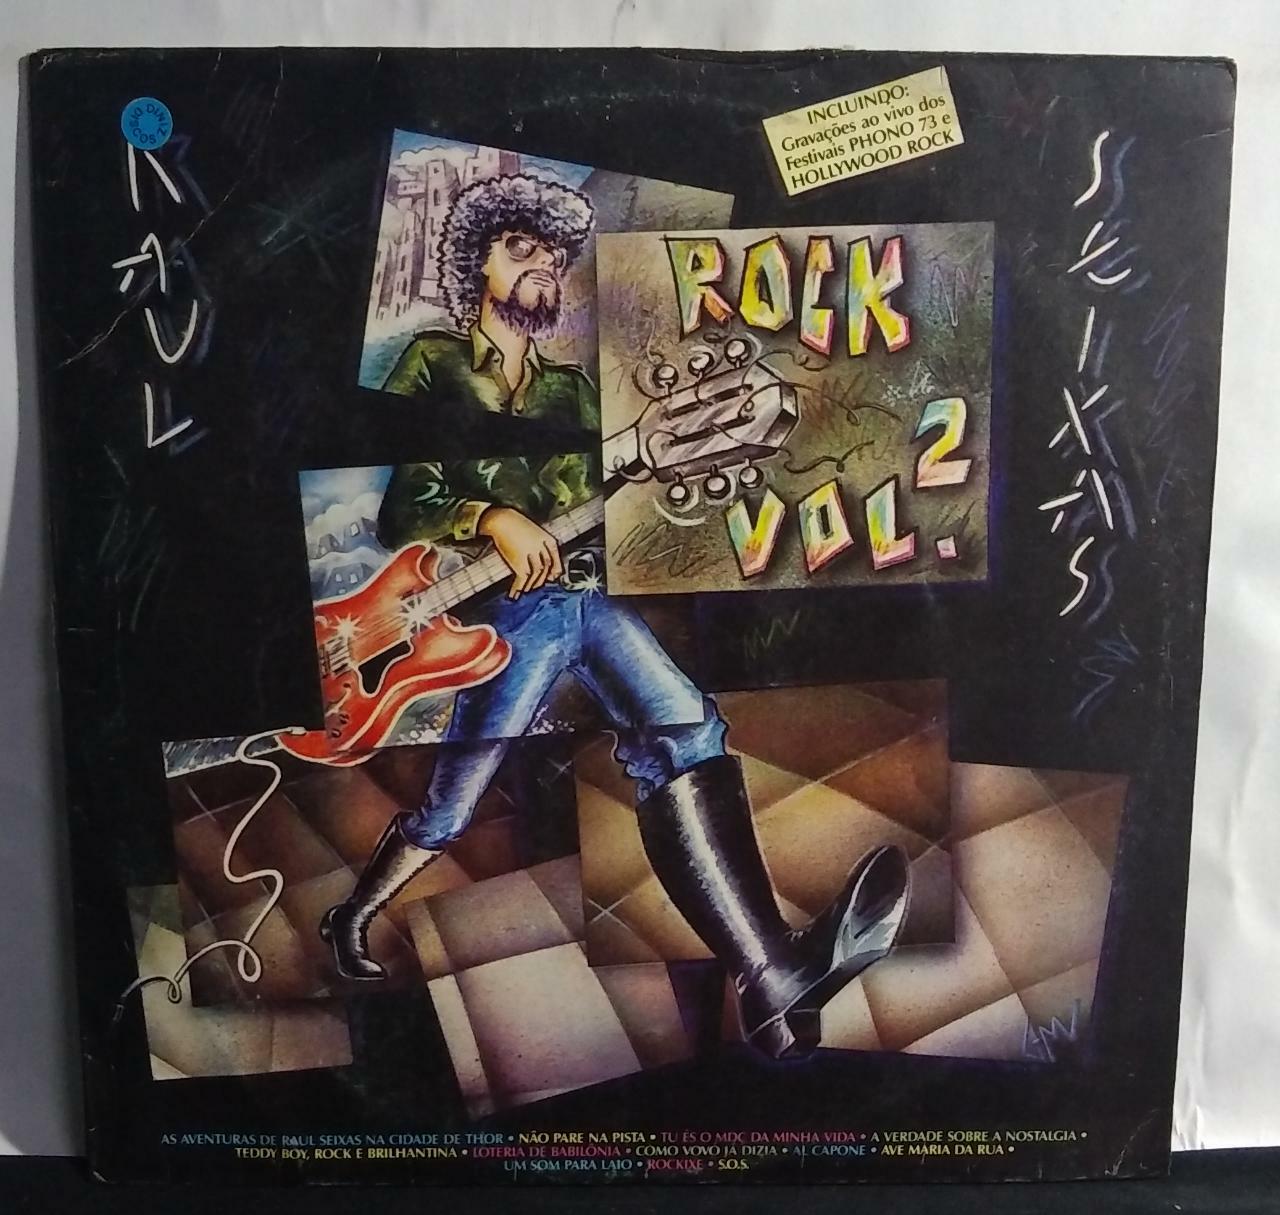 Vinil - Raul Seixas - Rock Vol 2